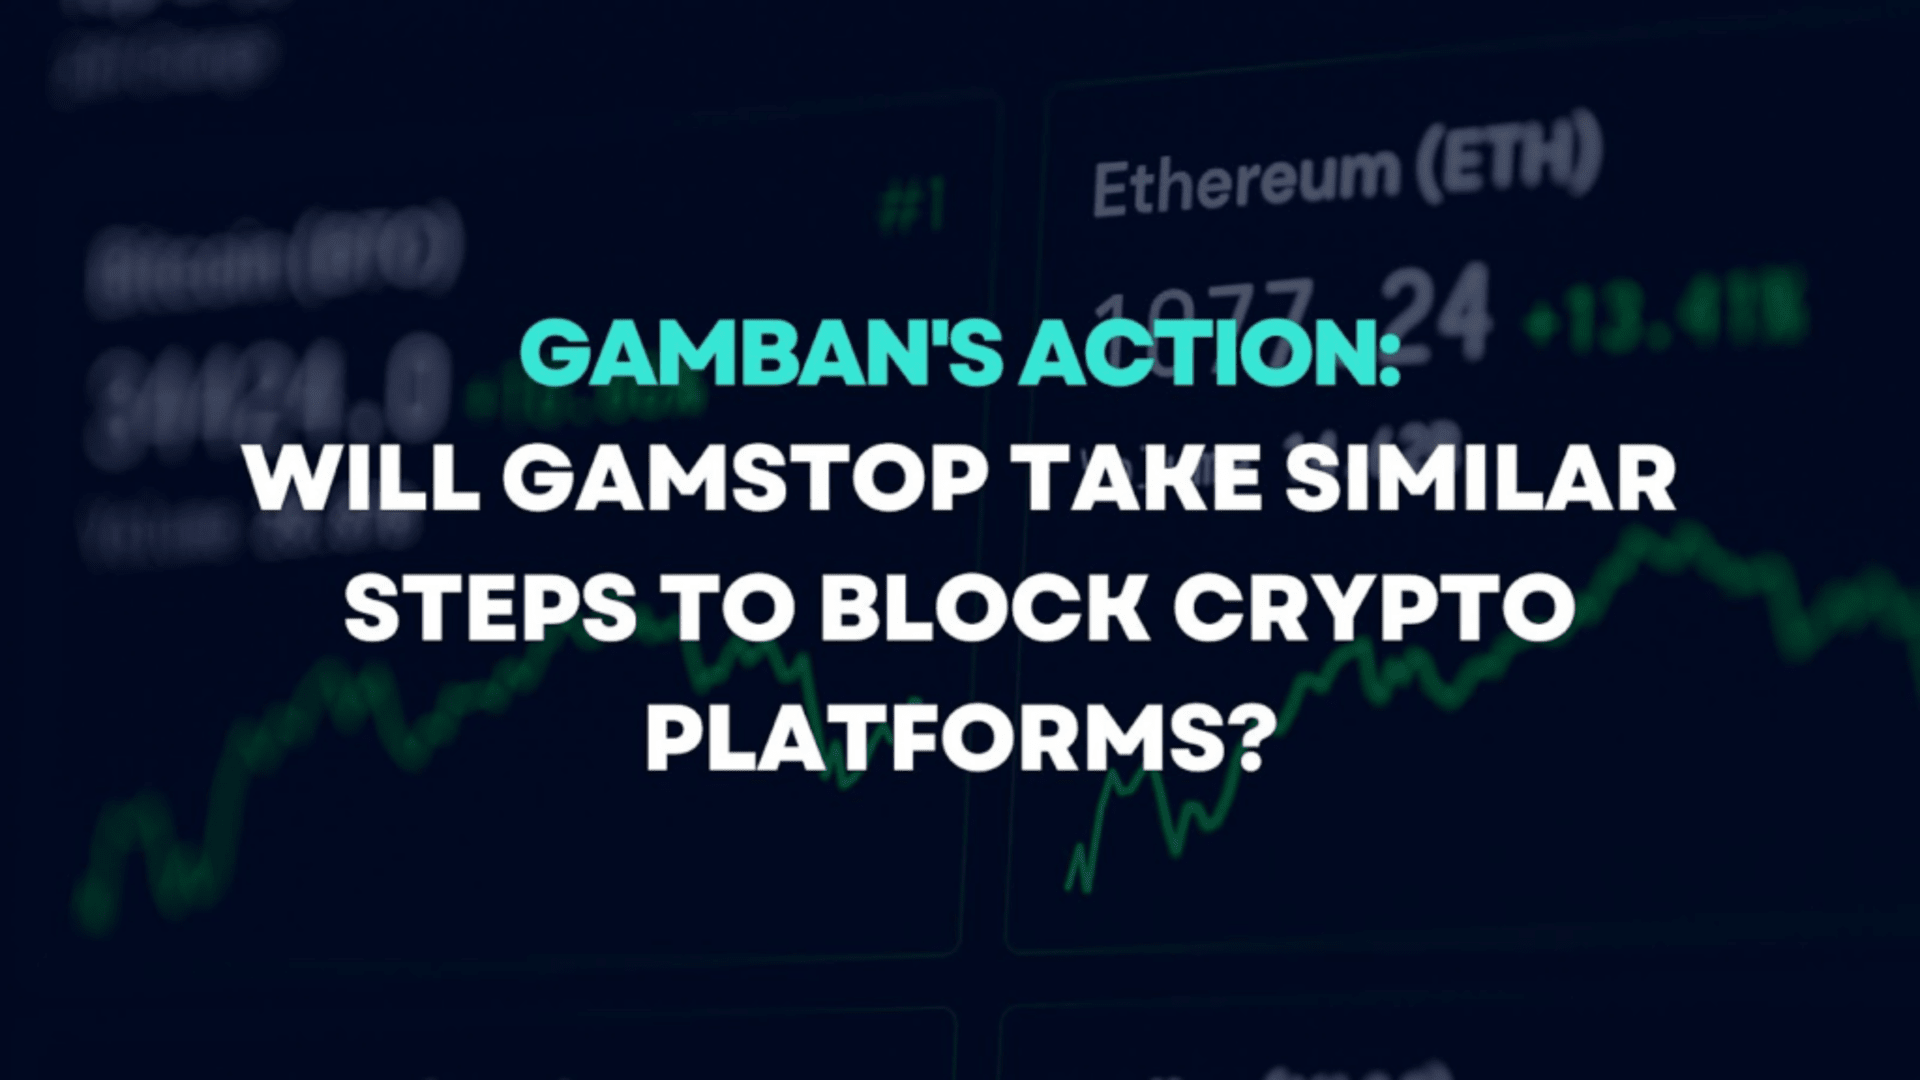 Gamban’s Action: Will GamStop Take Similar Steps to Block Crypto Platforms?